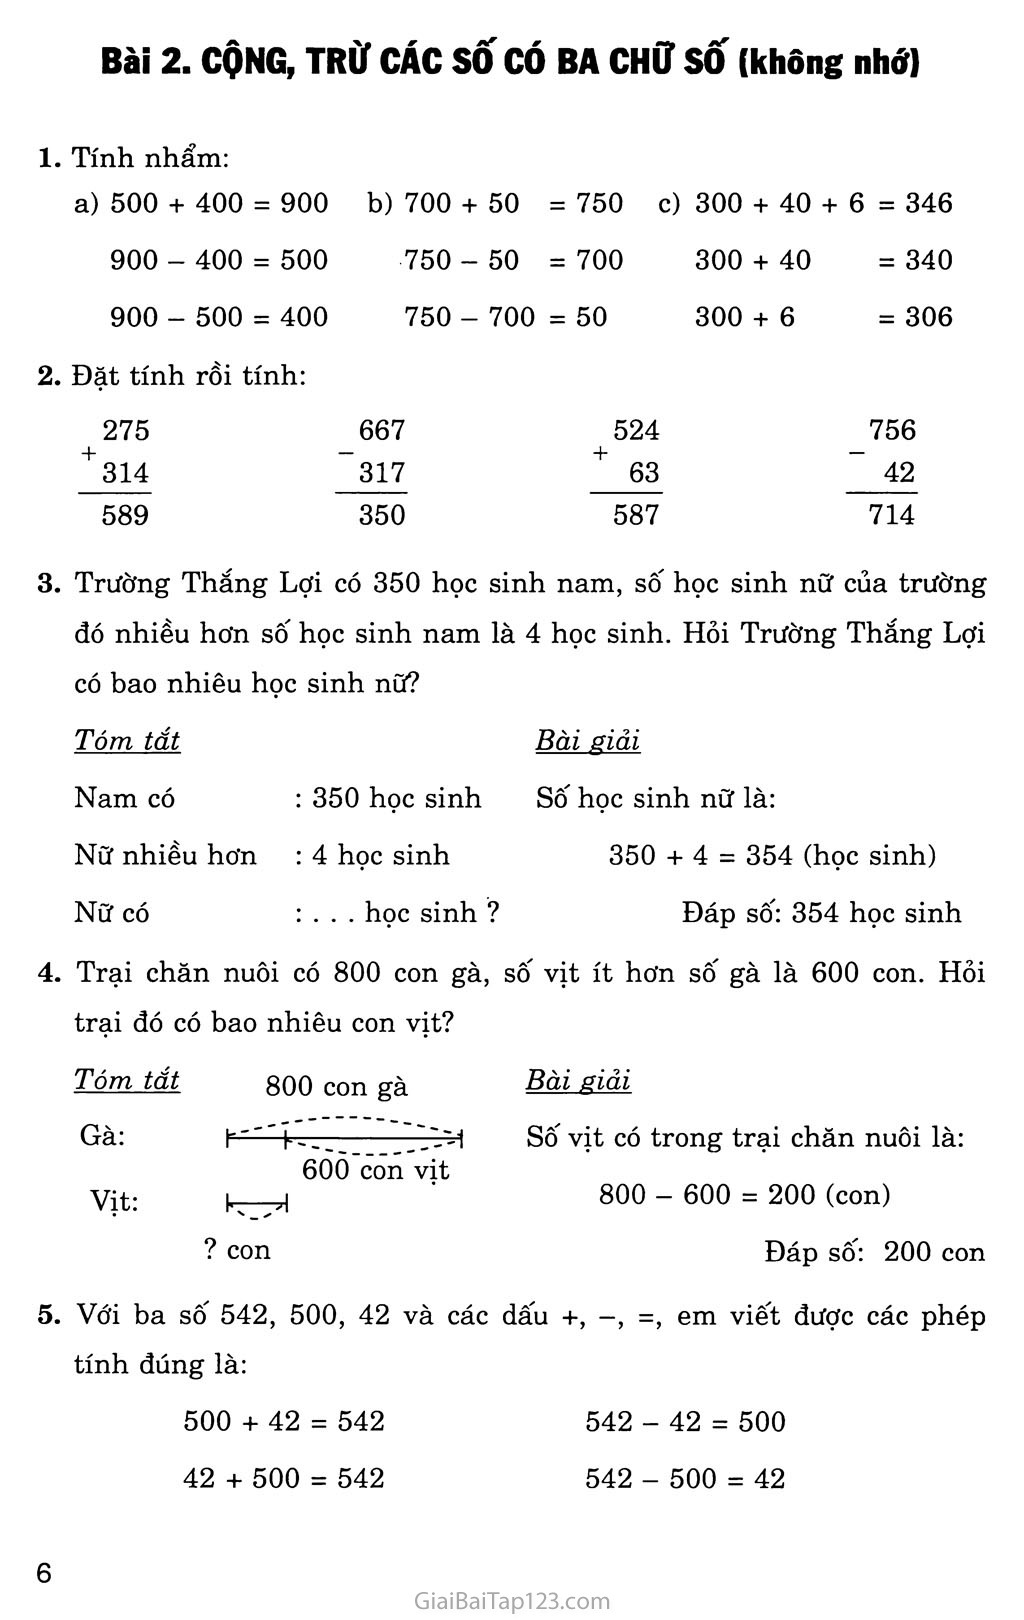 Bài 2: Cộng, trừ các số có ba chữ số (không nhớ) trang 1